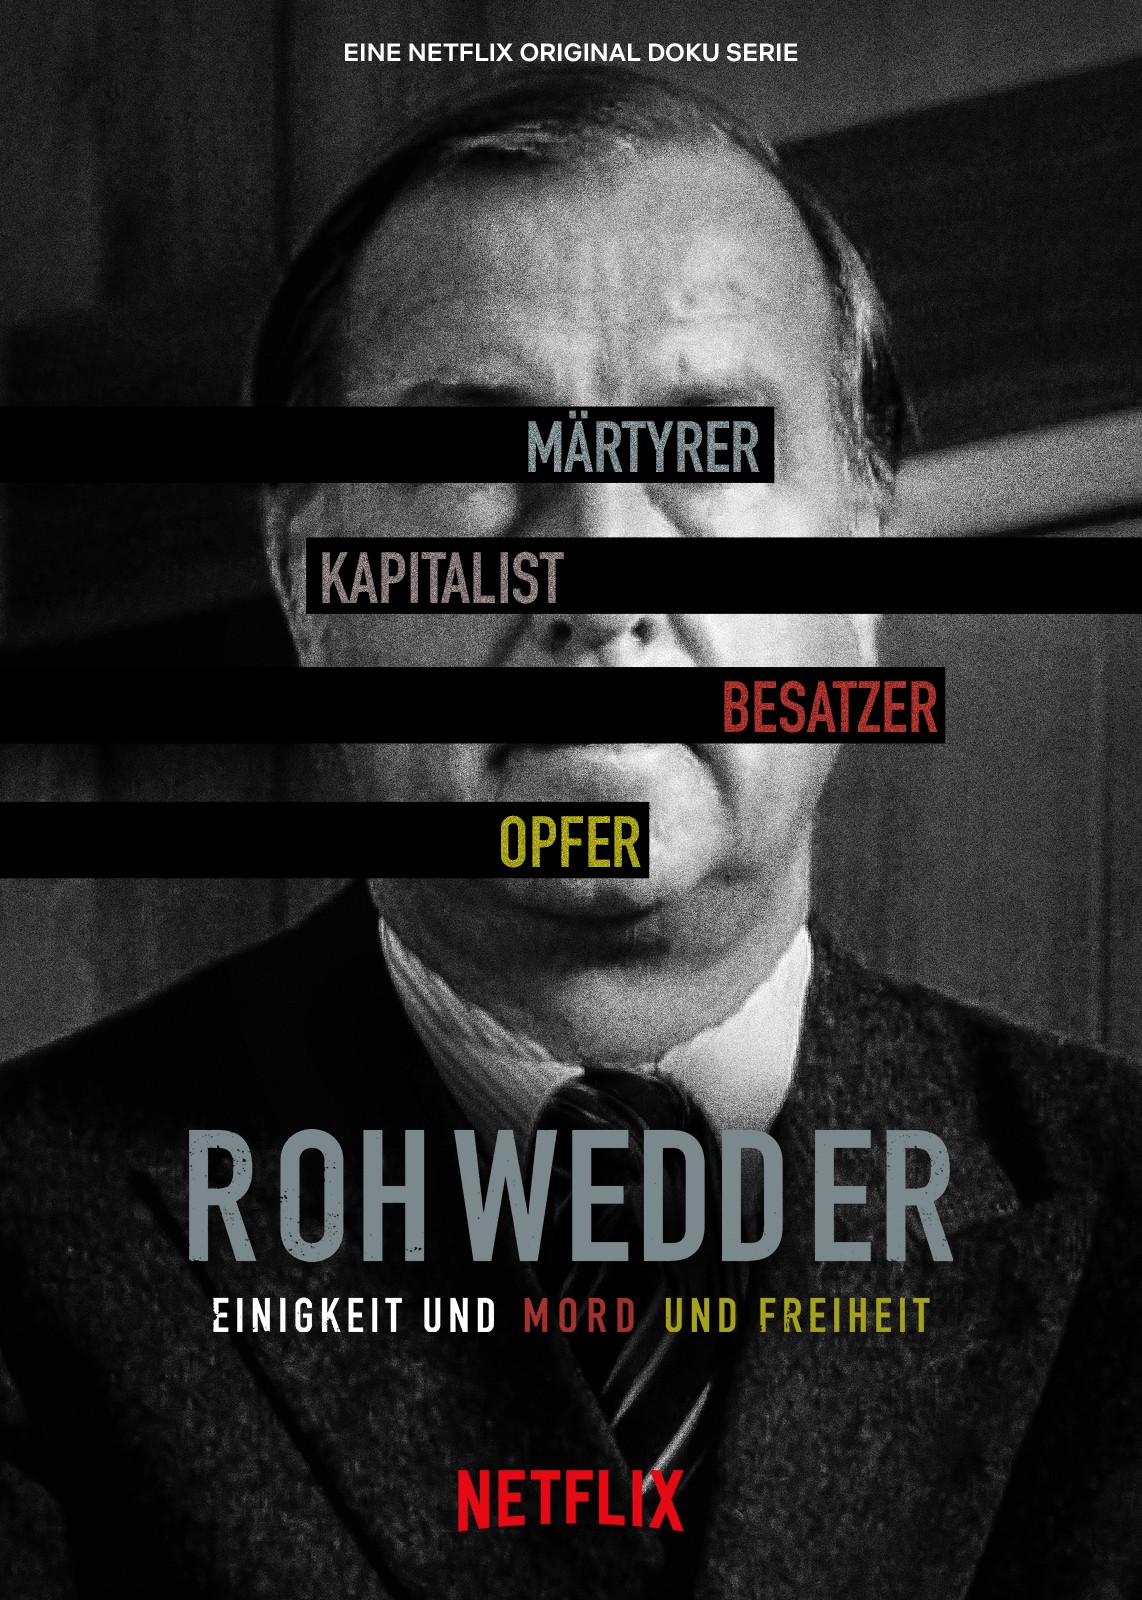 Tội ác hoàn hảo: Vụ ám sát Rohwedder - Tội ác hoàn hảo: Vụ ám sát Rohwedder (2020)